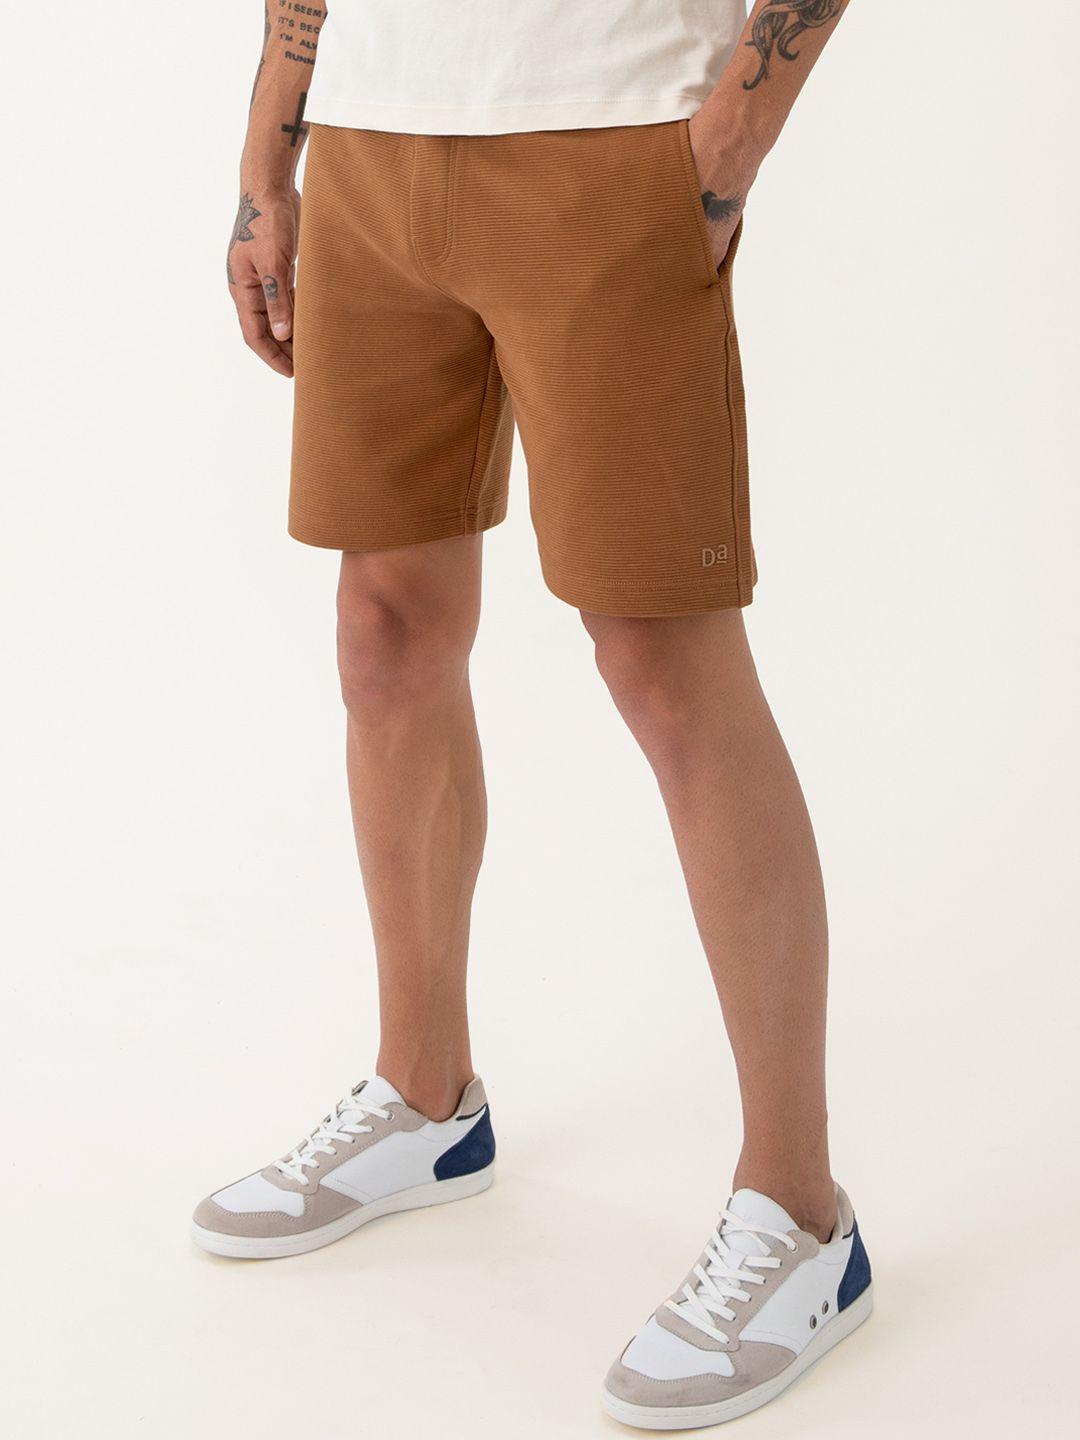 damensch-men-500-day-brown-pure-cotton-regular-shorts